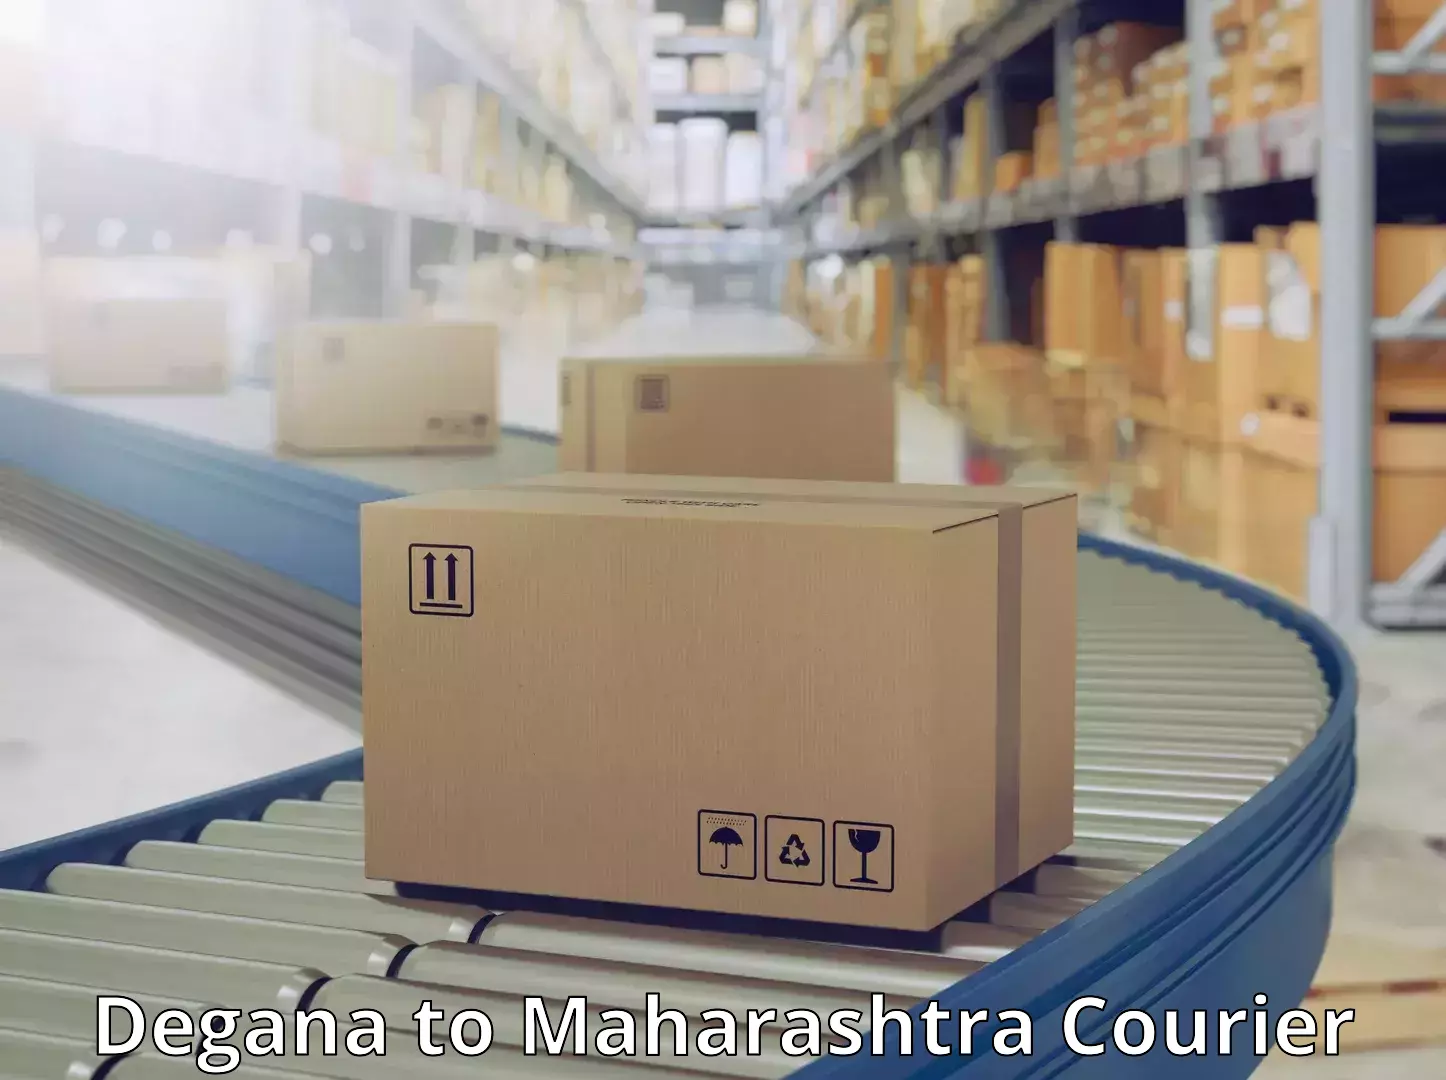 International courier rates Degana to Maharashtra